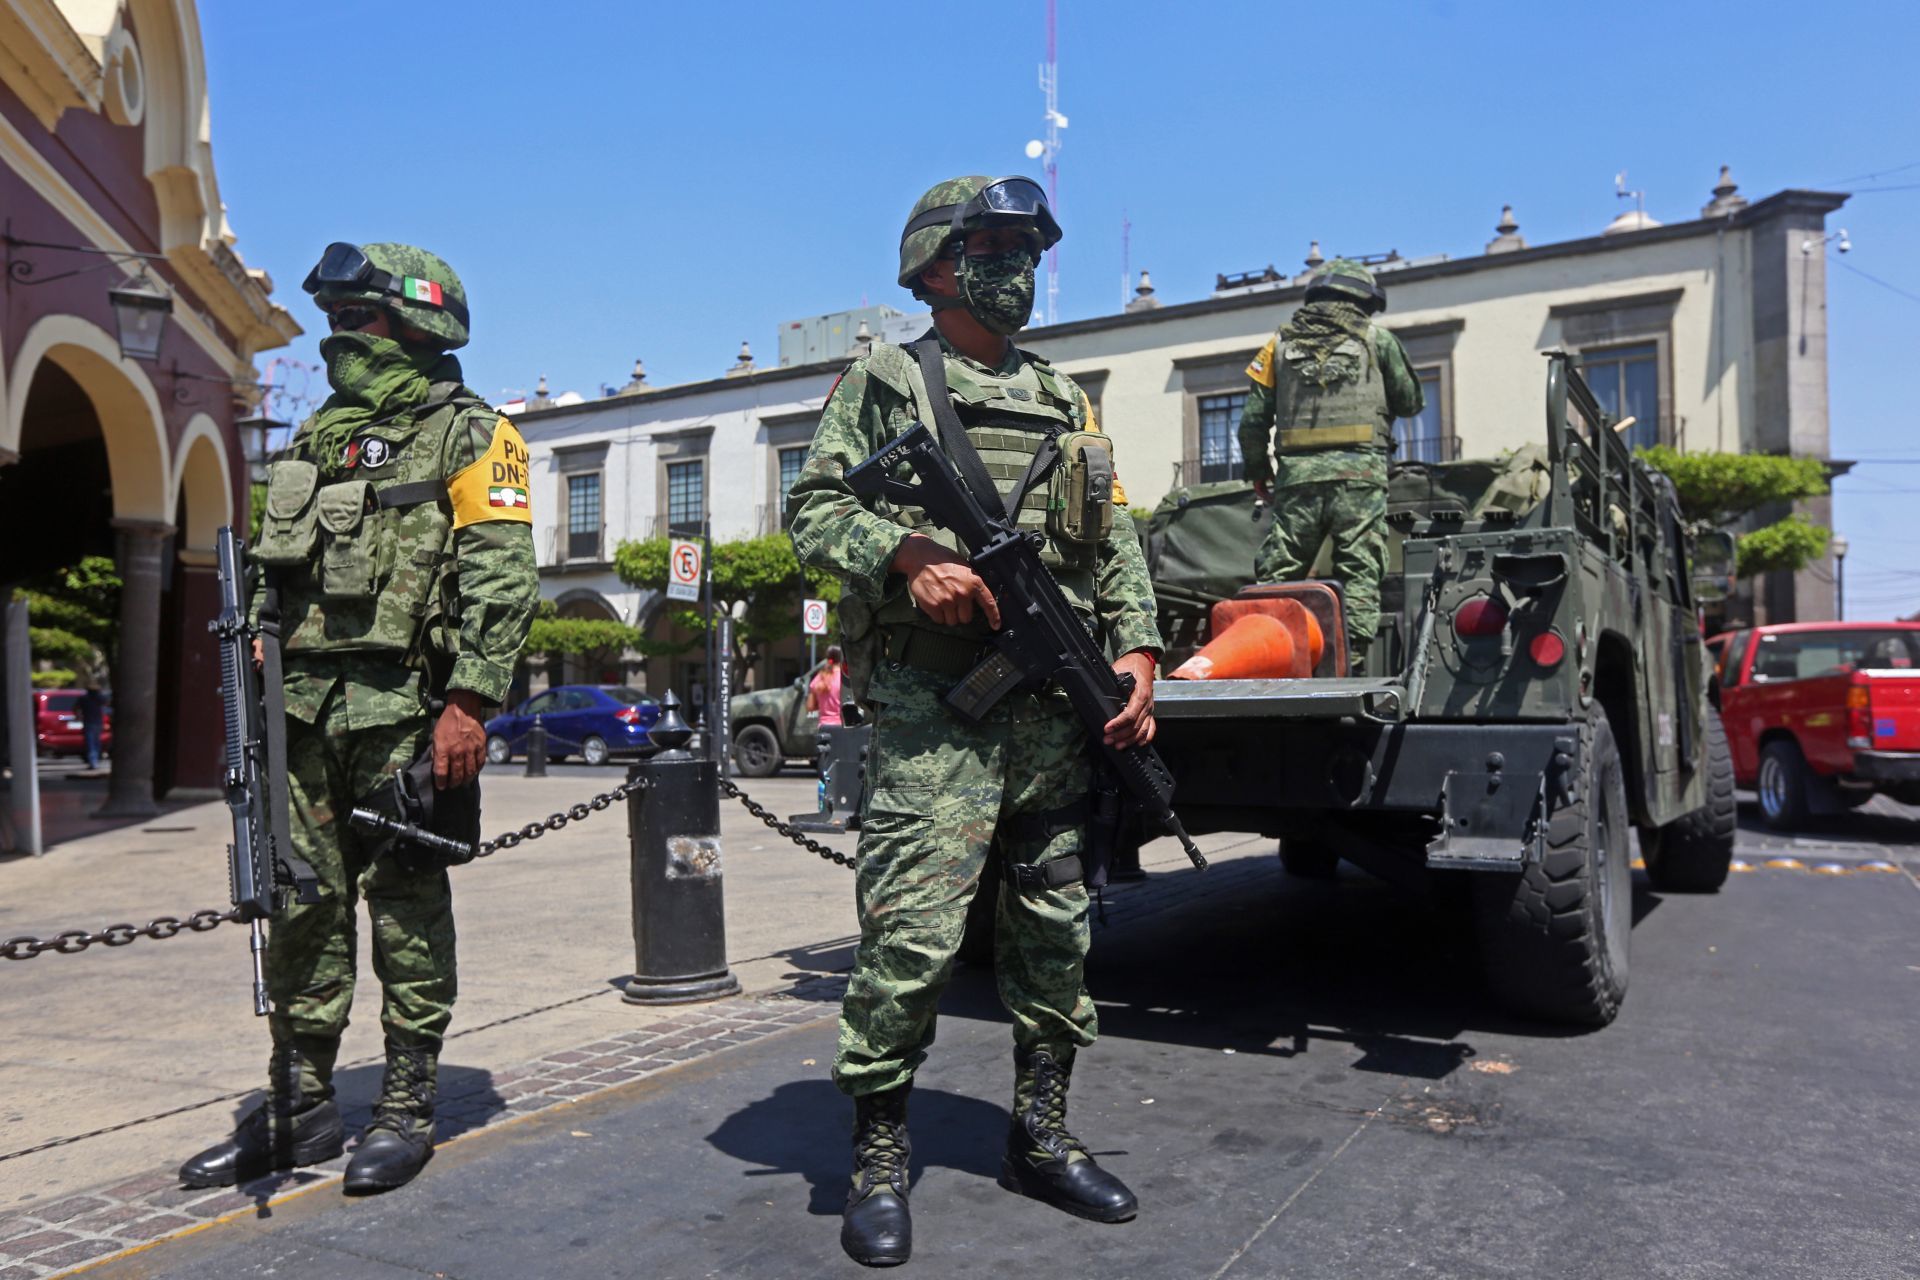 Intensa movilización policiaca por aire y tierra tras enfrentamiento en Tlaquepaque